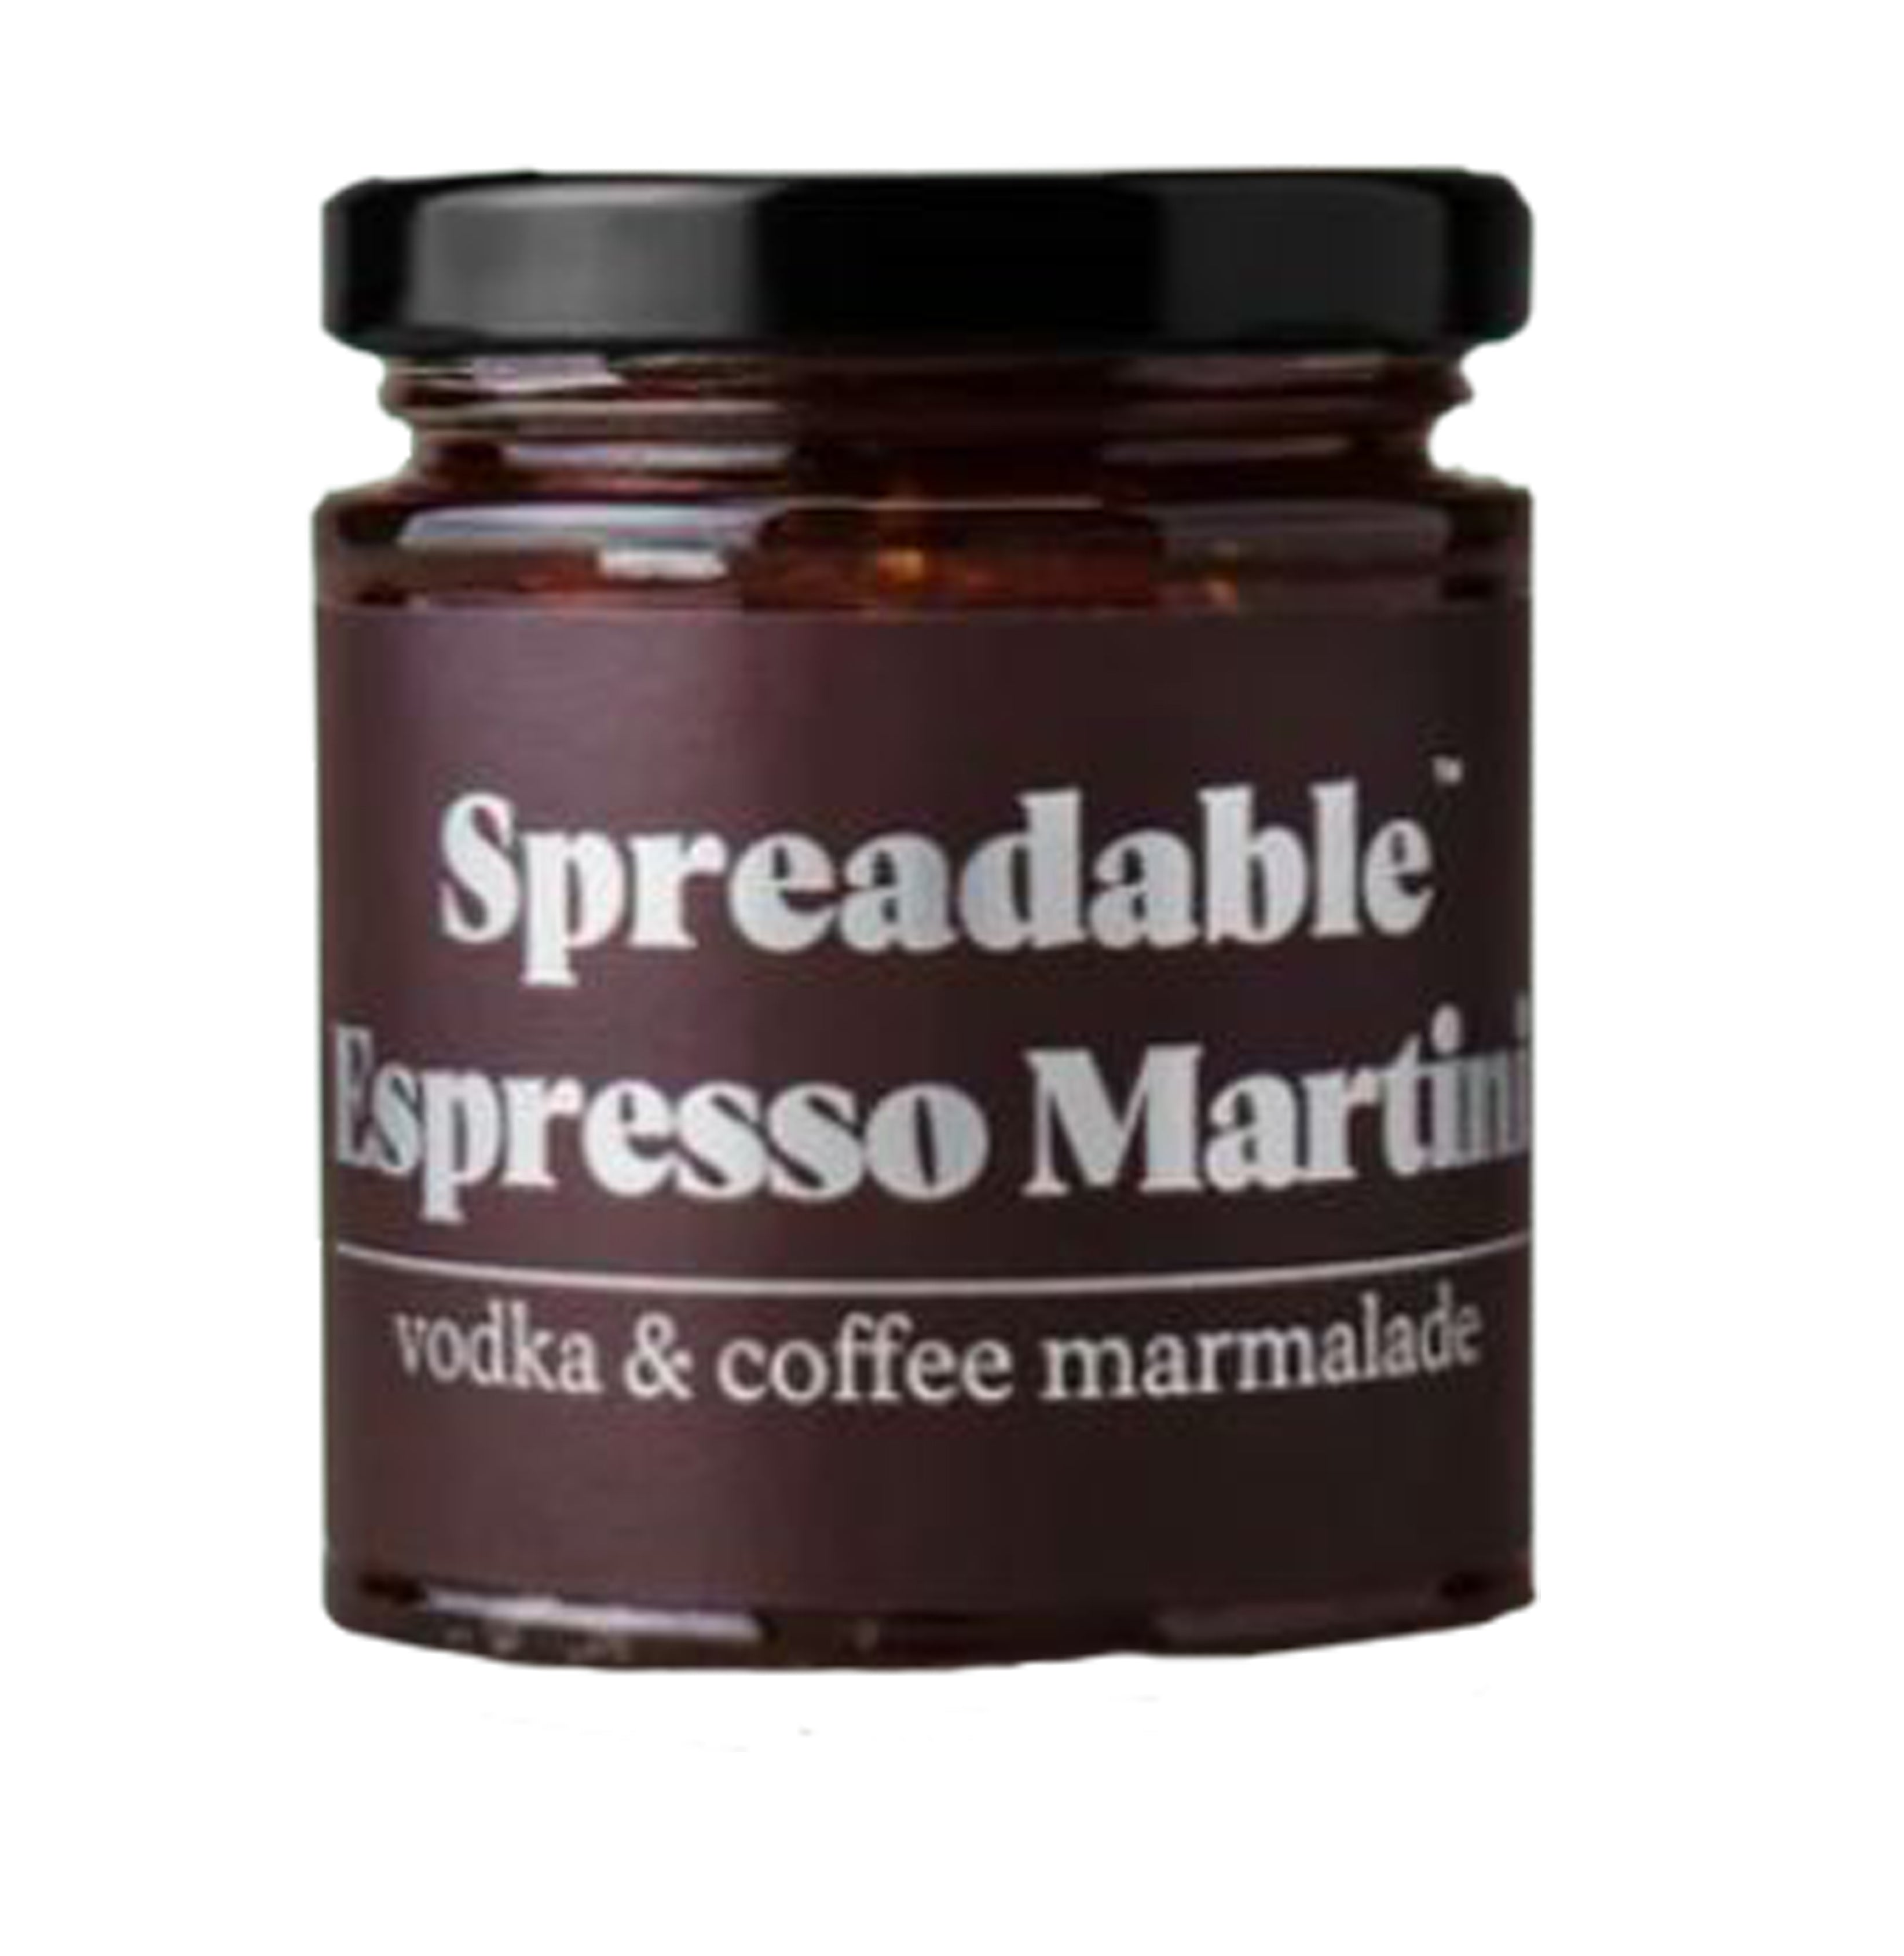 Espresso Martini sulta - skyldueign fyrir Expresso Martini fíklana